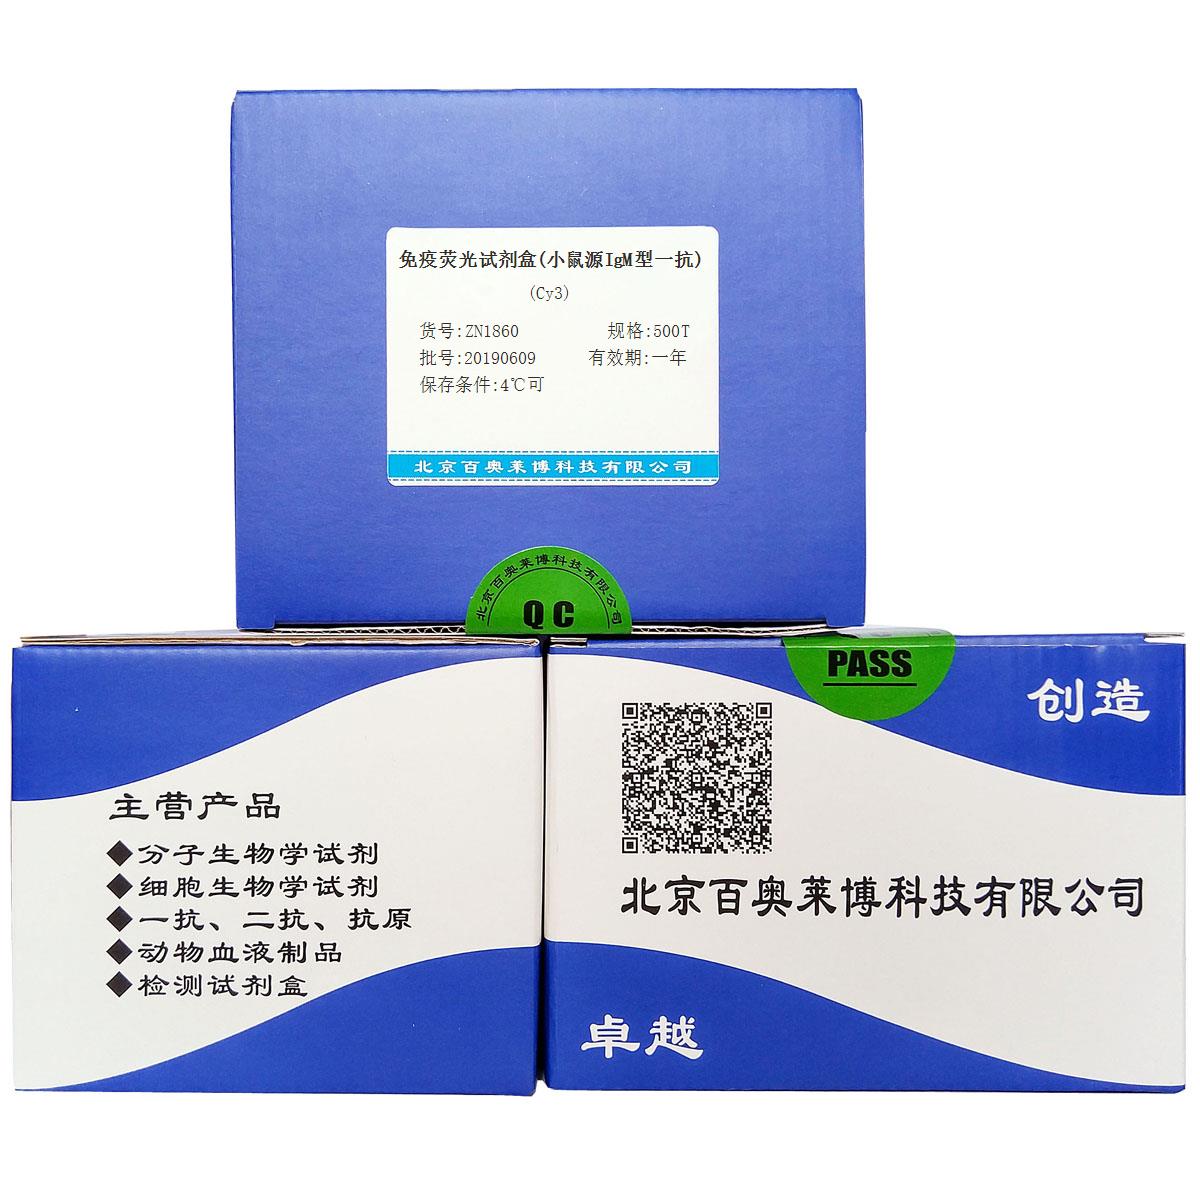 免疫荧光试剂盒(小鼠源IgM型一抗)(Cy3)